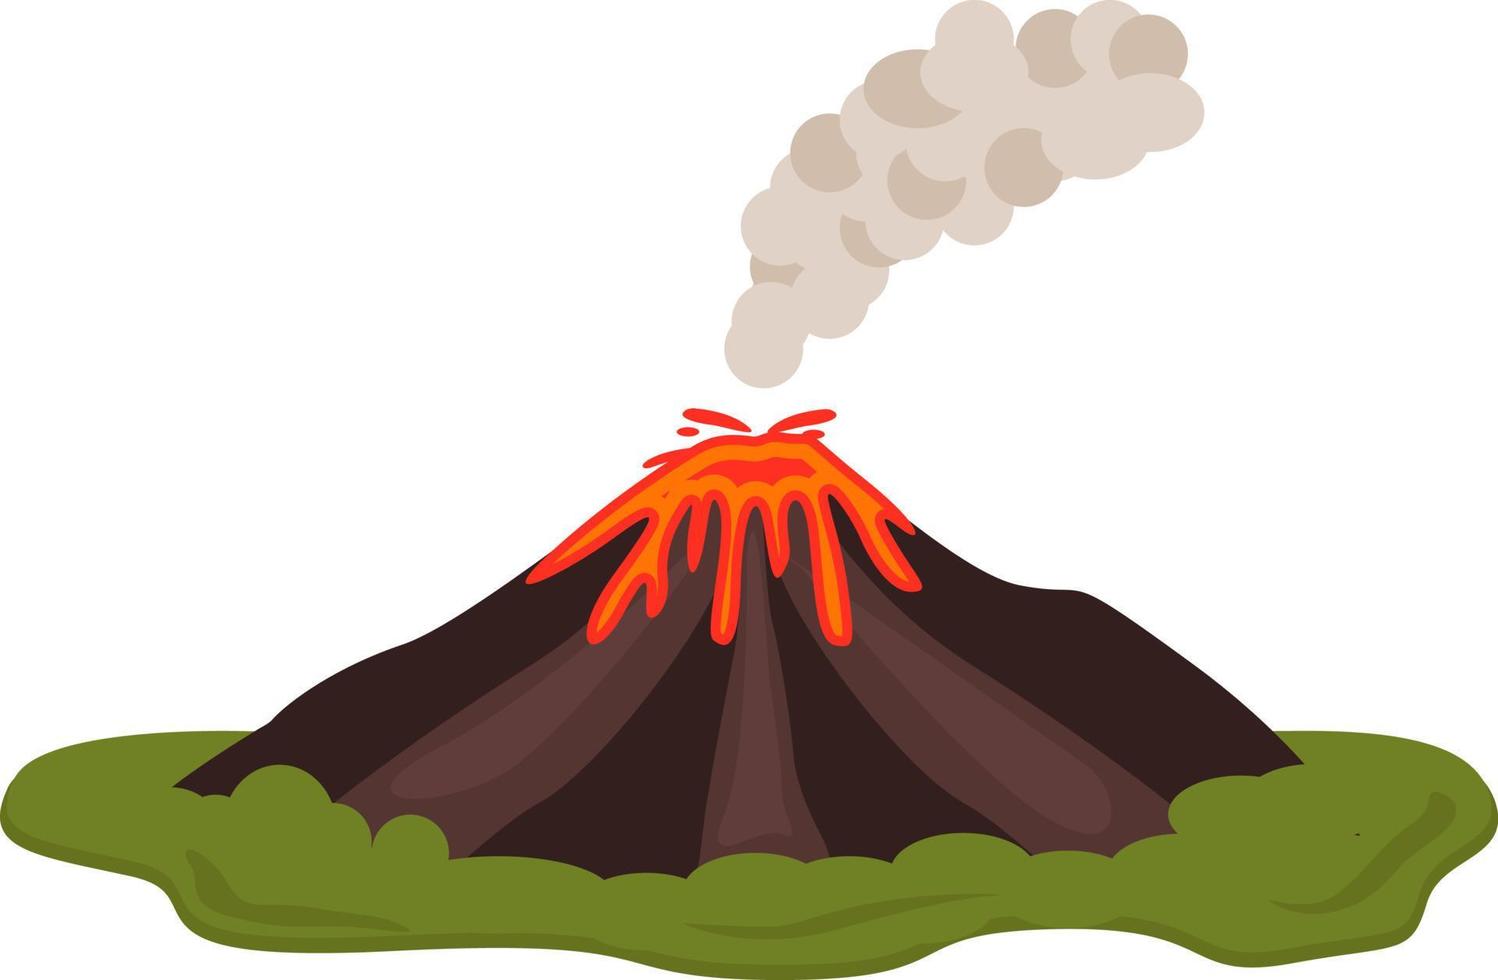 viejo volcán, ilustración, vector sobre fondo blanco.